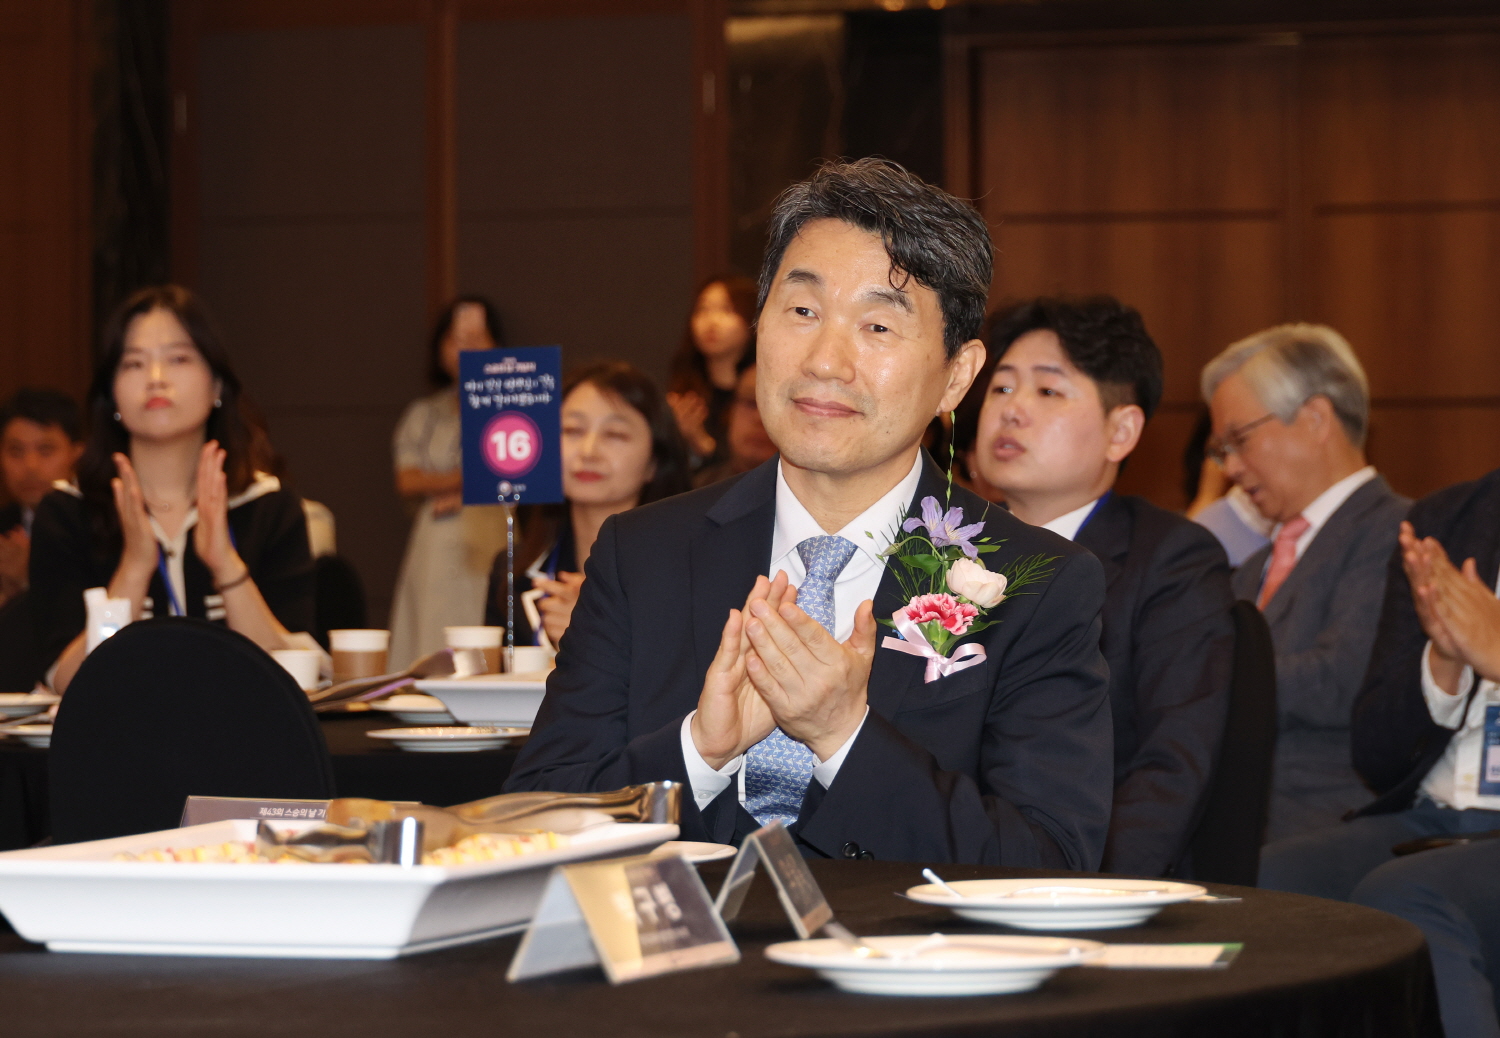 이주호 부총리 겸 교육부장관은 5월 14일(화), 서울 더케이호텔에서 제43회 스승의 날 기념식을 개최했다.